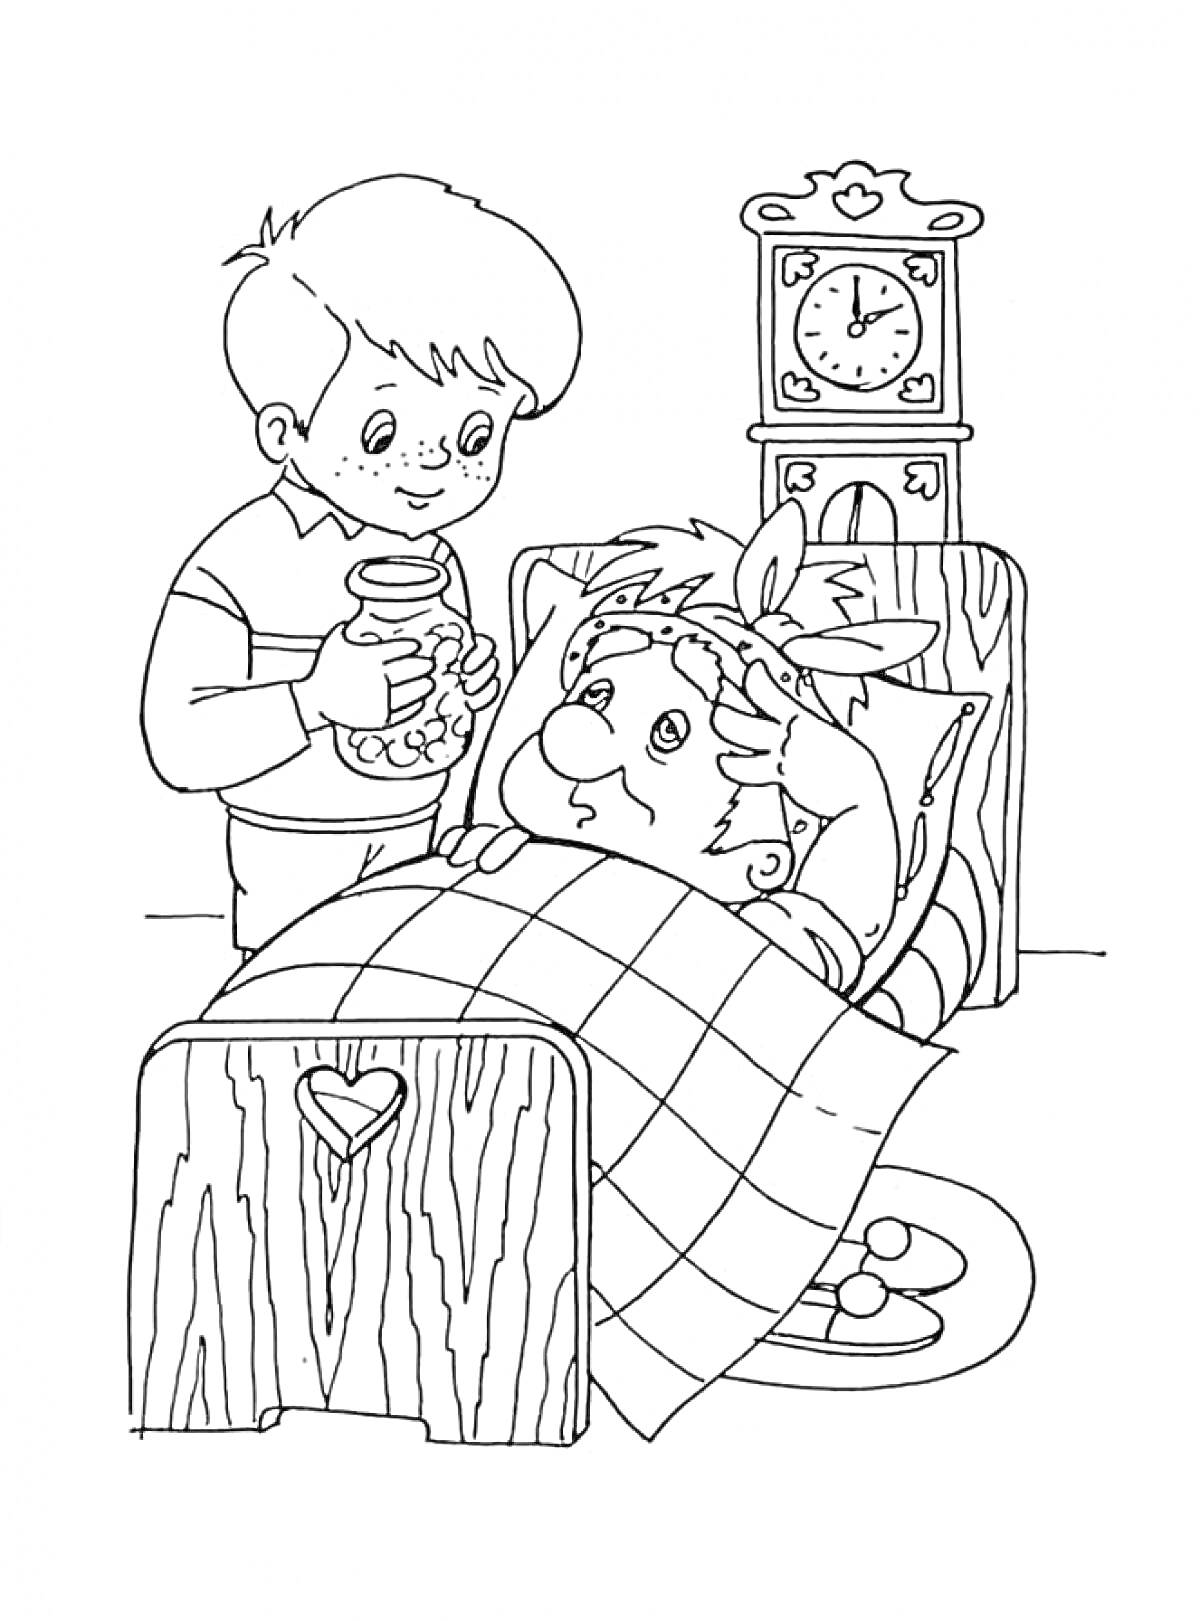 Раскраска Маленький мальчик дает банку с вареньем Карлсону, который лежит в постели с градусником на голове, рядом стоят большие часы